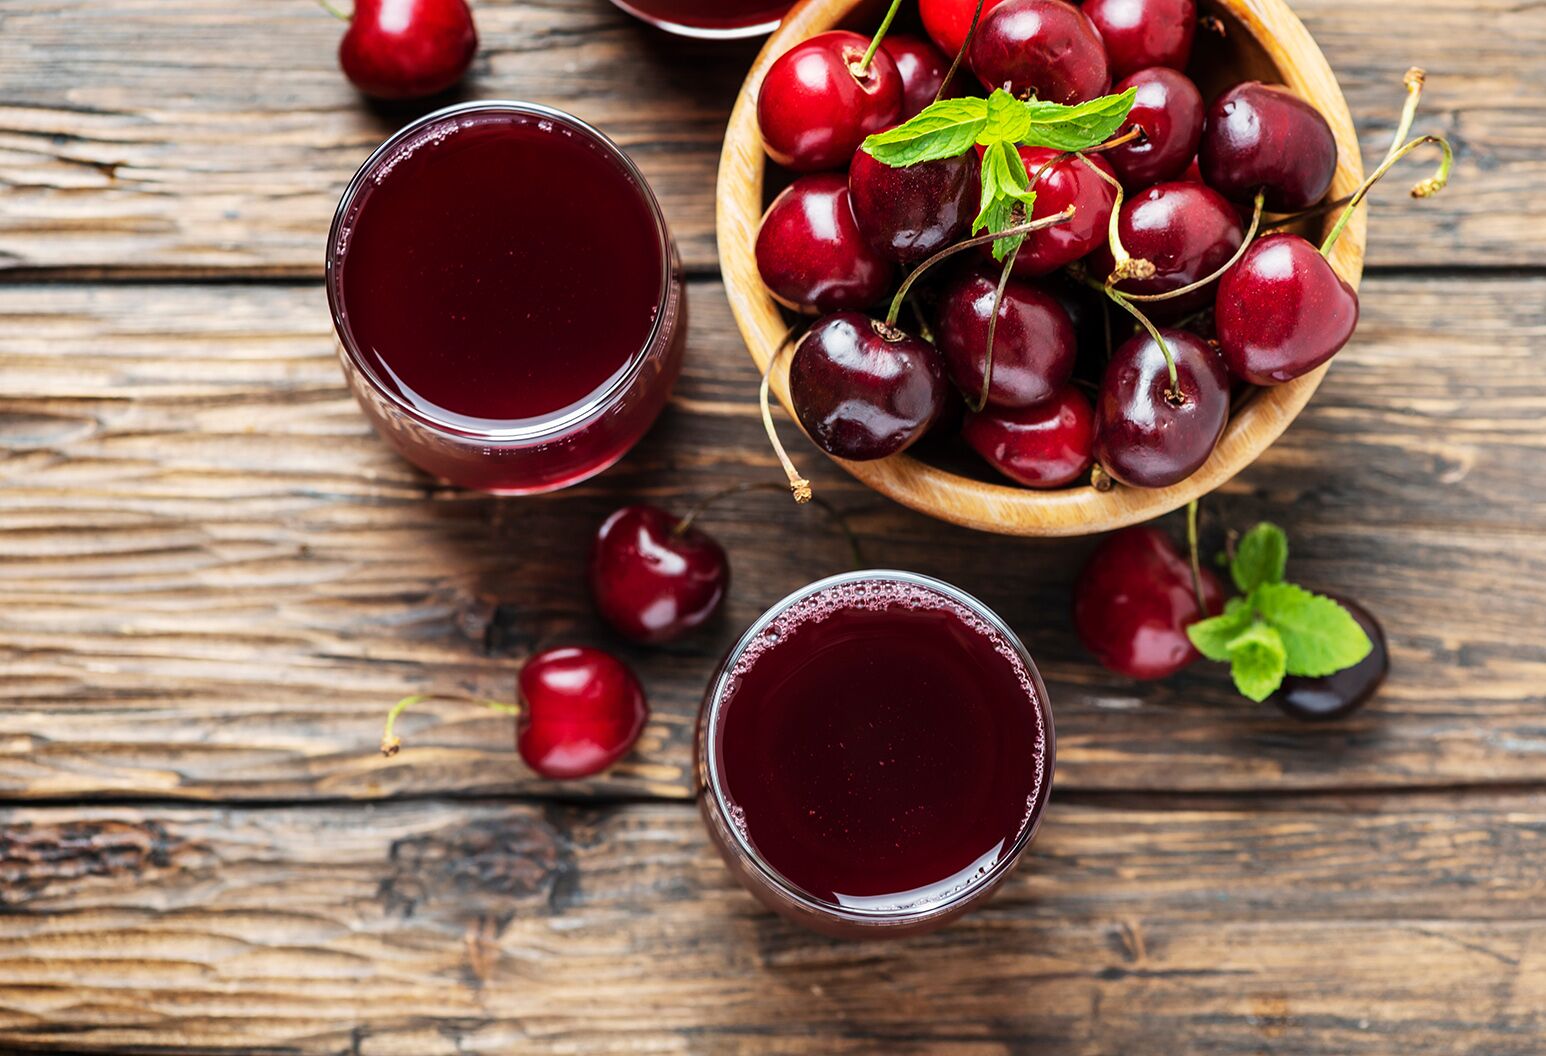 Tart cherry juice for detoxification